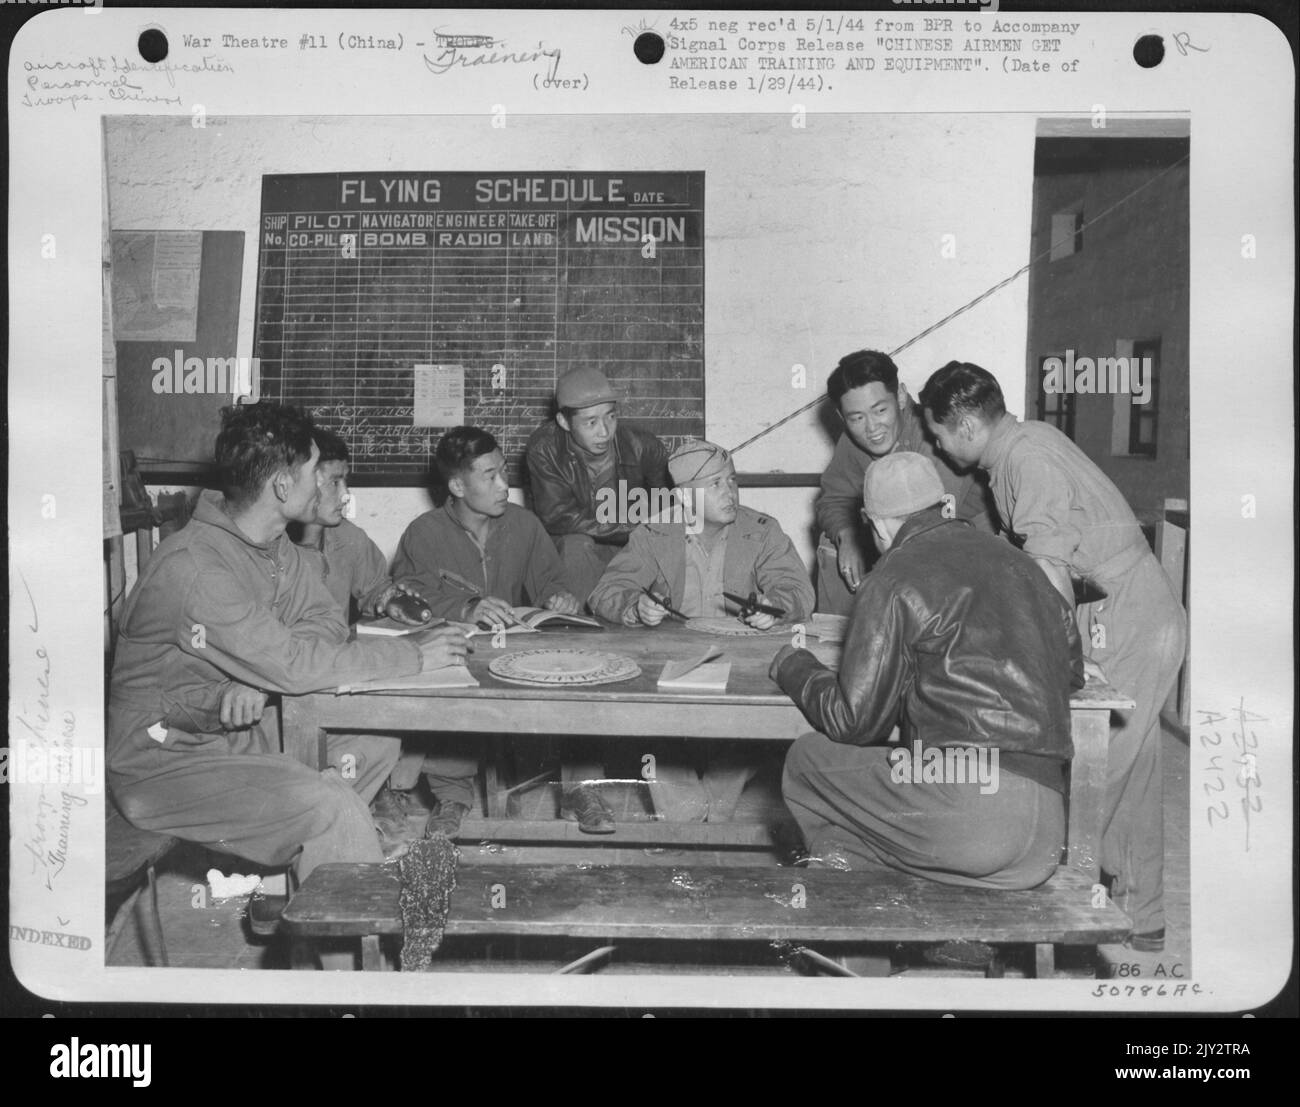 T.F. Capt Hackleman, Springfield, Ohio, detiene una classe di identificazione dell'aeromobile. Da sinistra a destra: Lt. Kung S.H., Lt. Yang C.F., Lt. Chang S.C., Lt. Hew S. Y., Capt. Hackleman, Lt. Chao L.P. Il Lt. Yang Y.K. e il Lt. Keh H.S. Foto Stock